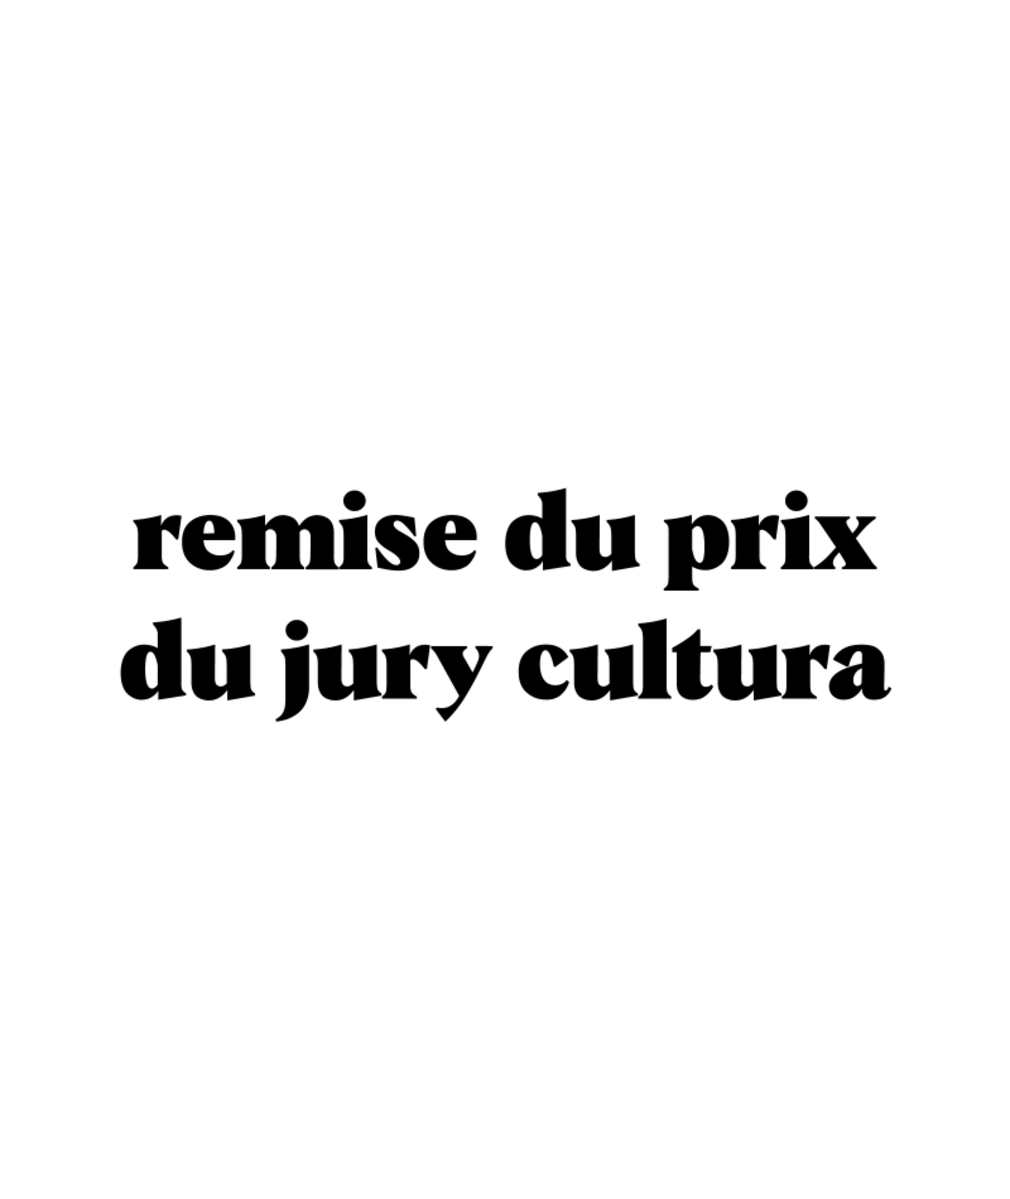 0 Photo de l'agenda' Remise de prix du jury Cultura